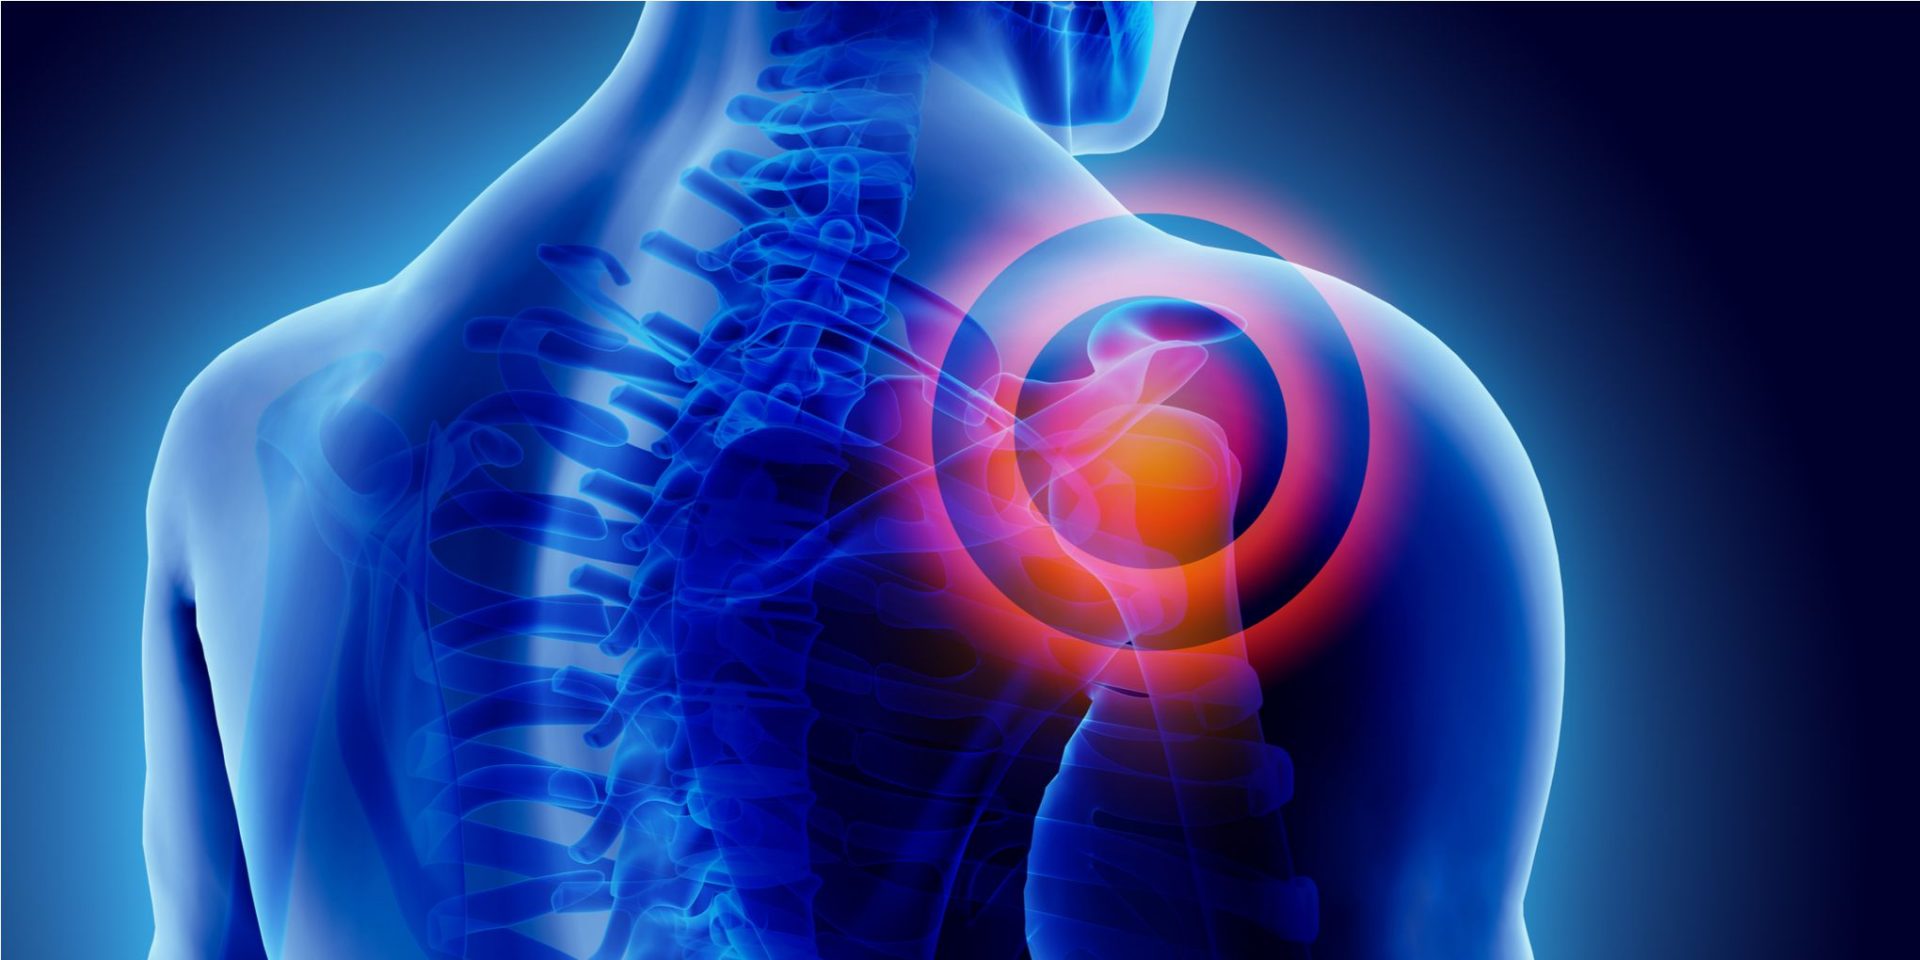 Bolna ramena i rameni zglobovi - kako ukloniti bol? Dijagnostika i vježbe za liječenje